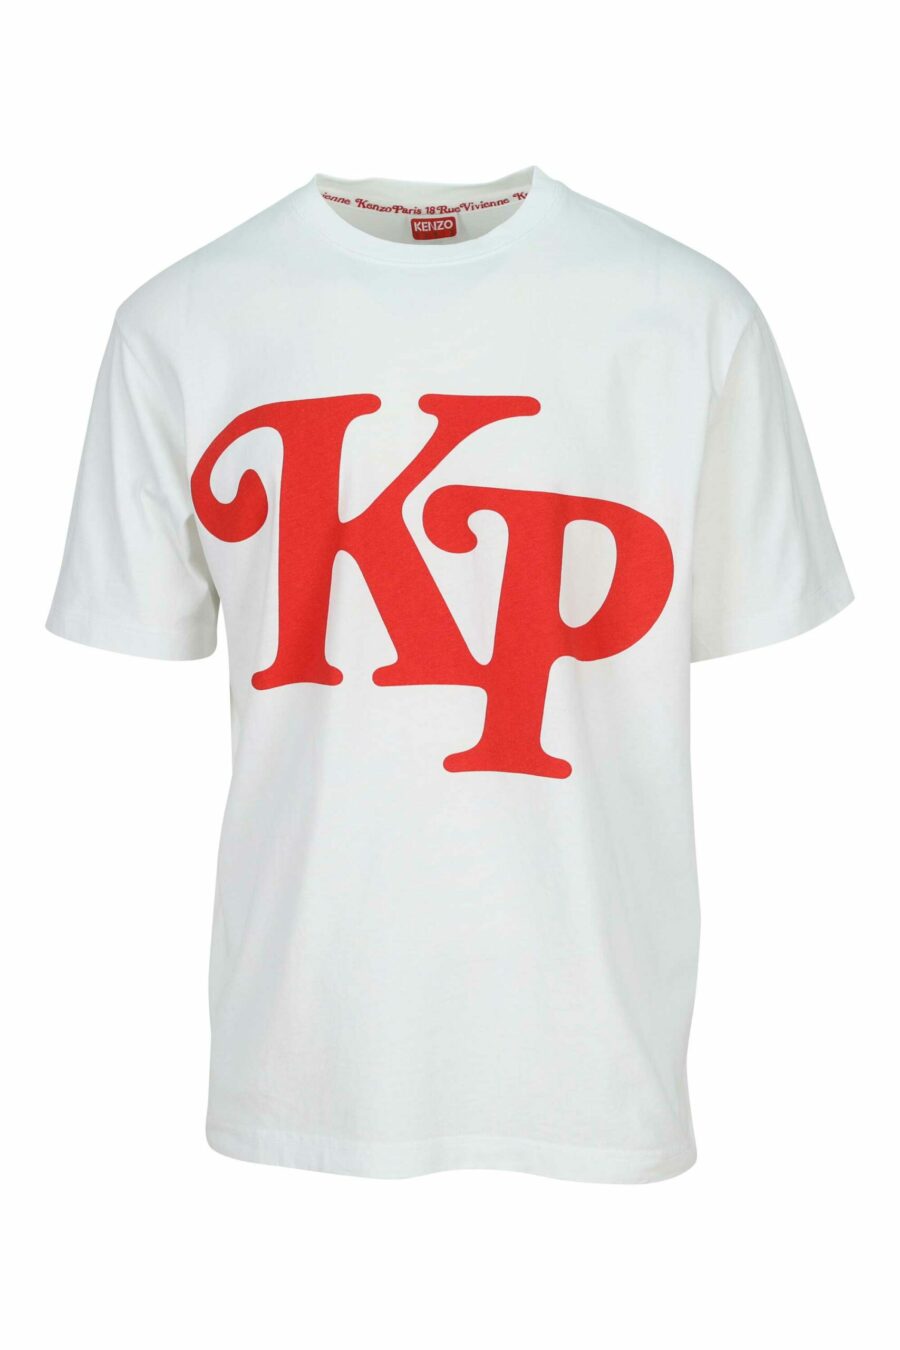 T-shirt blanc oversize avec maxilogo "kenzo by verdy" - 3612230623842 scaled